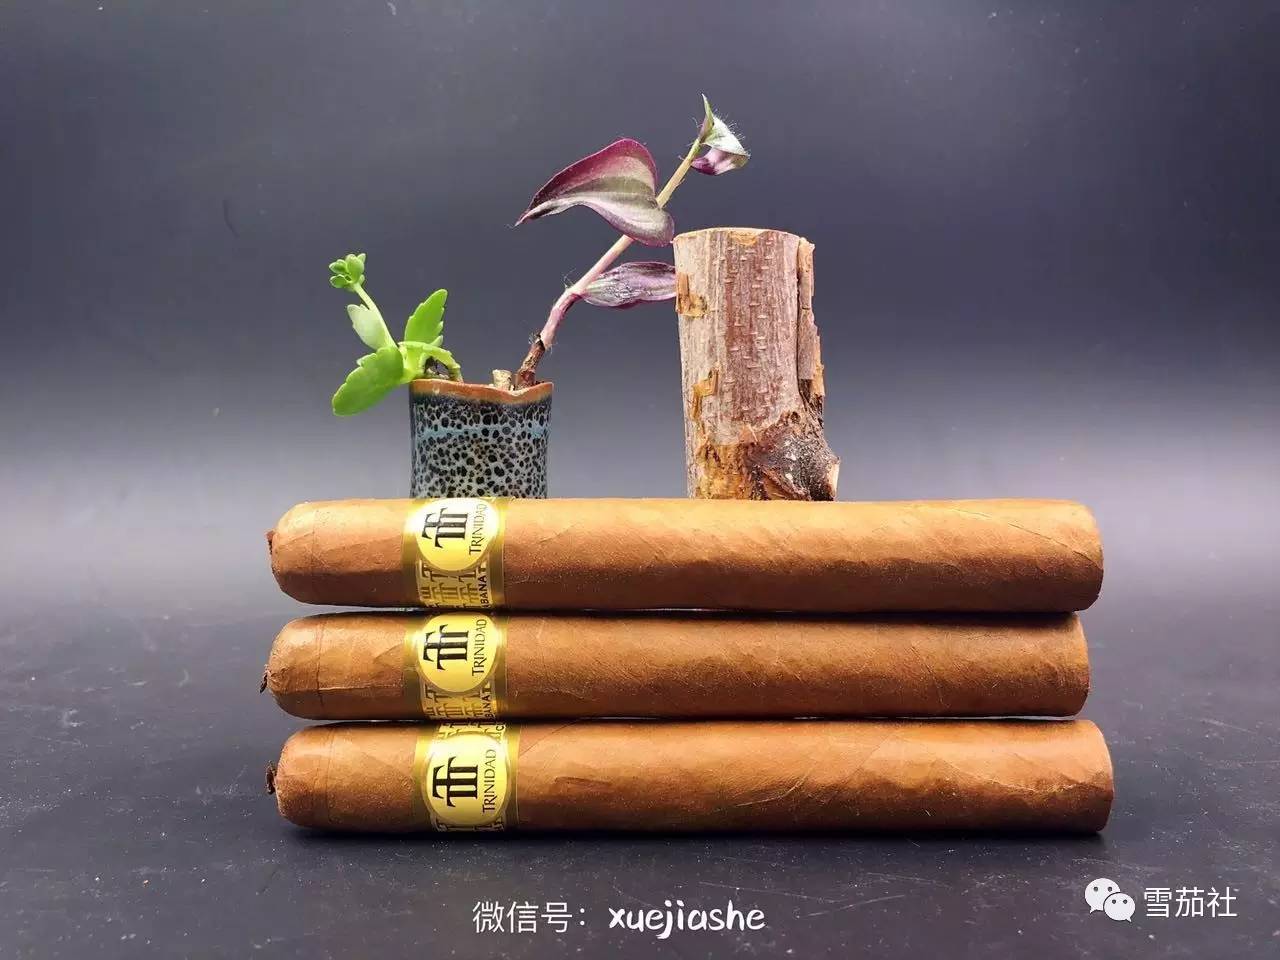 雪茄与烟斗,你更钟情哪个?